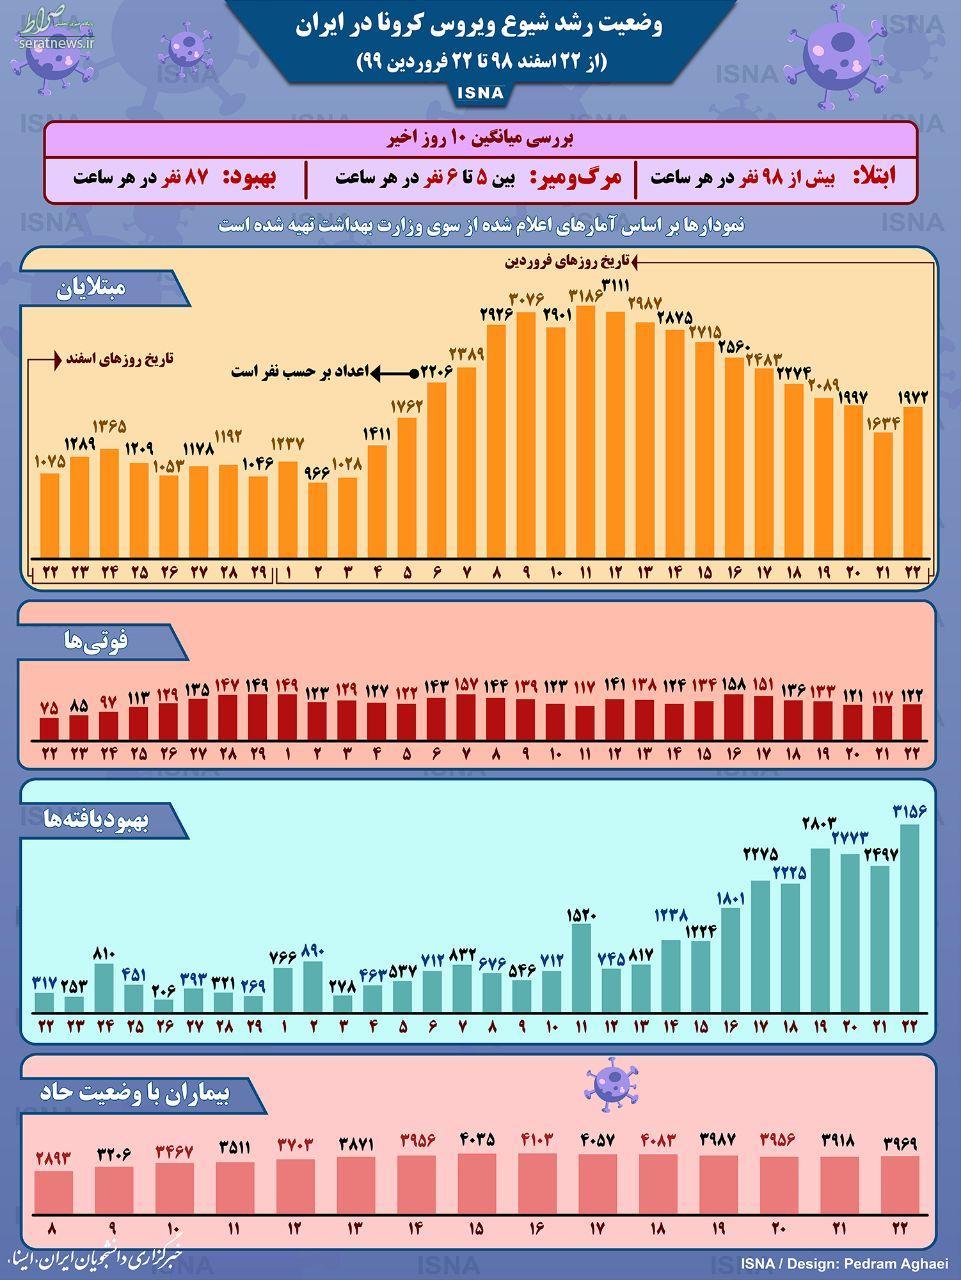 اینفوگرافی/ وضعیت یک ماهه رشد شیوع ویروس کرونا در ایران